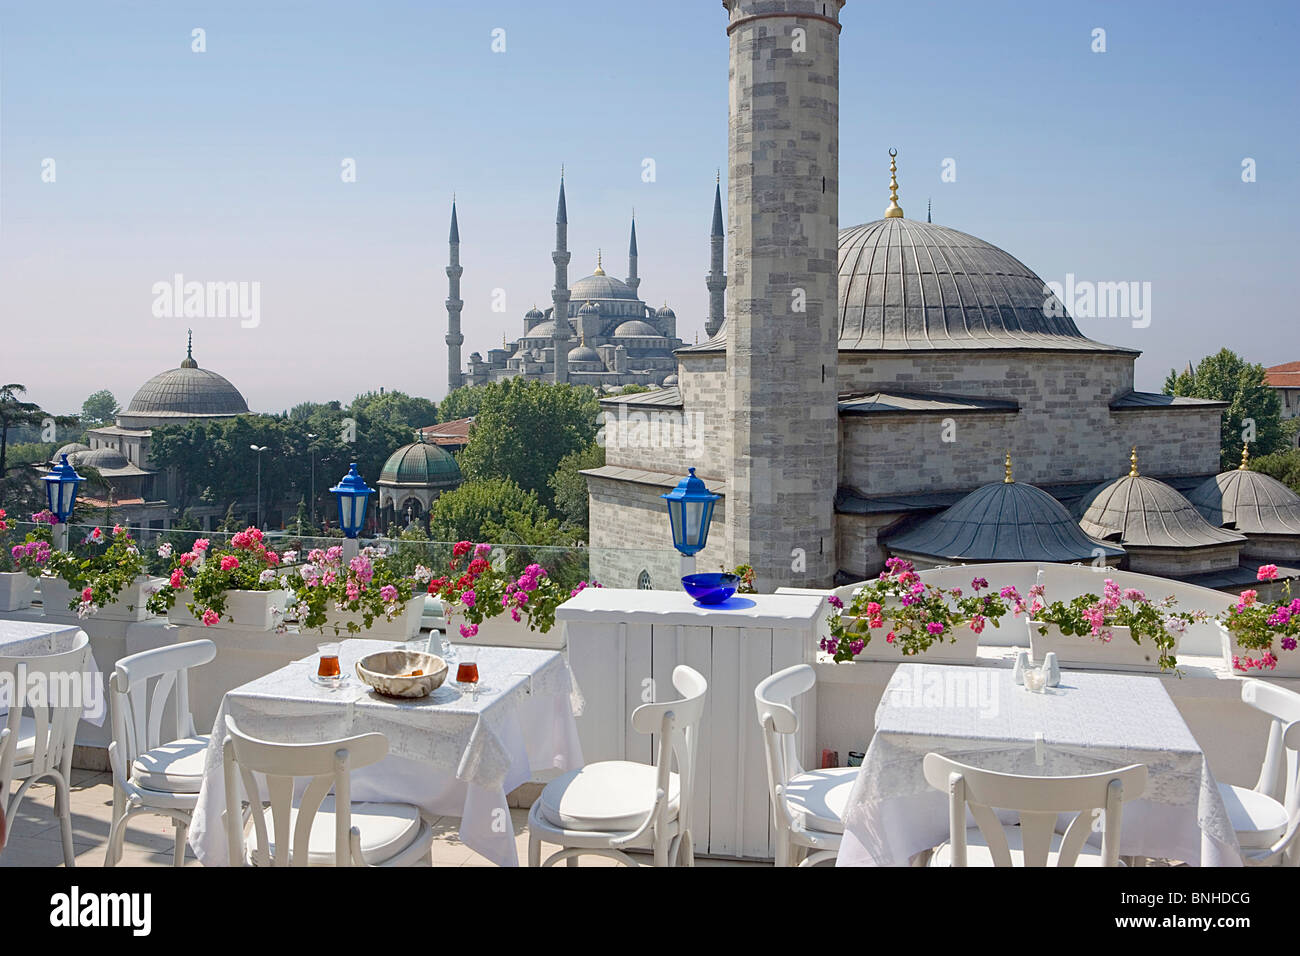 La Turchia Giugno 2008 Istanbul city Firuz Aga Moschea Moschea Blu Sultan Ahmed minareto della moschea minareti Islam Terrazza tabelle di fiori Foto Stock